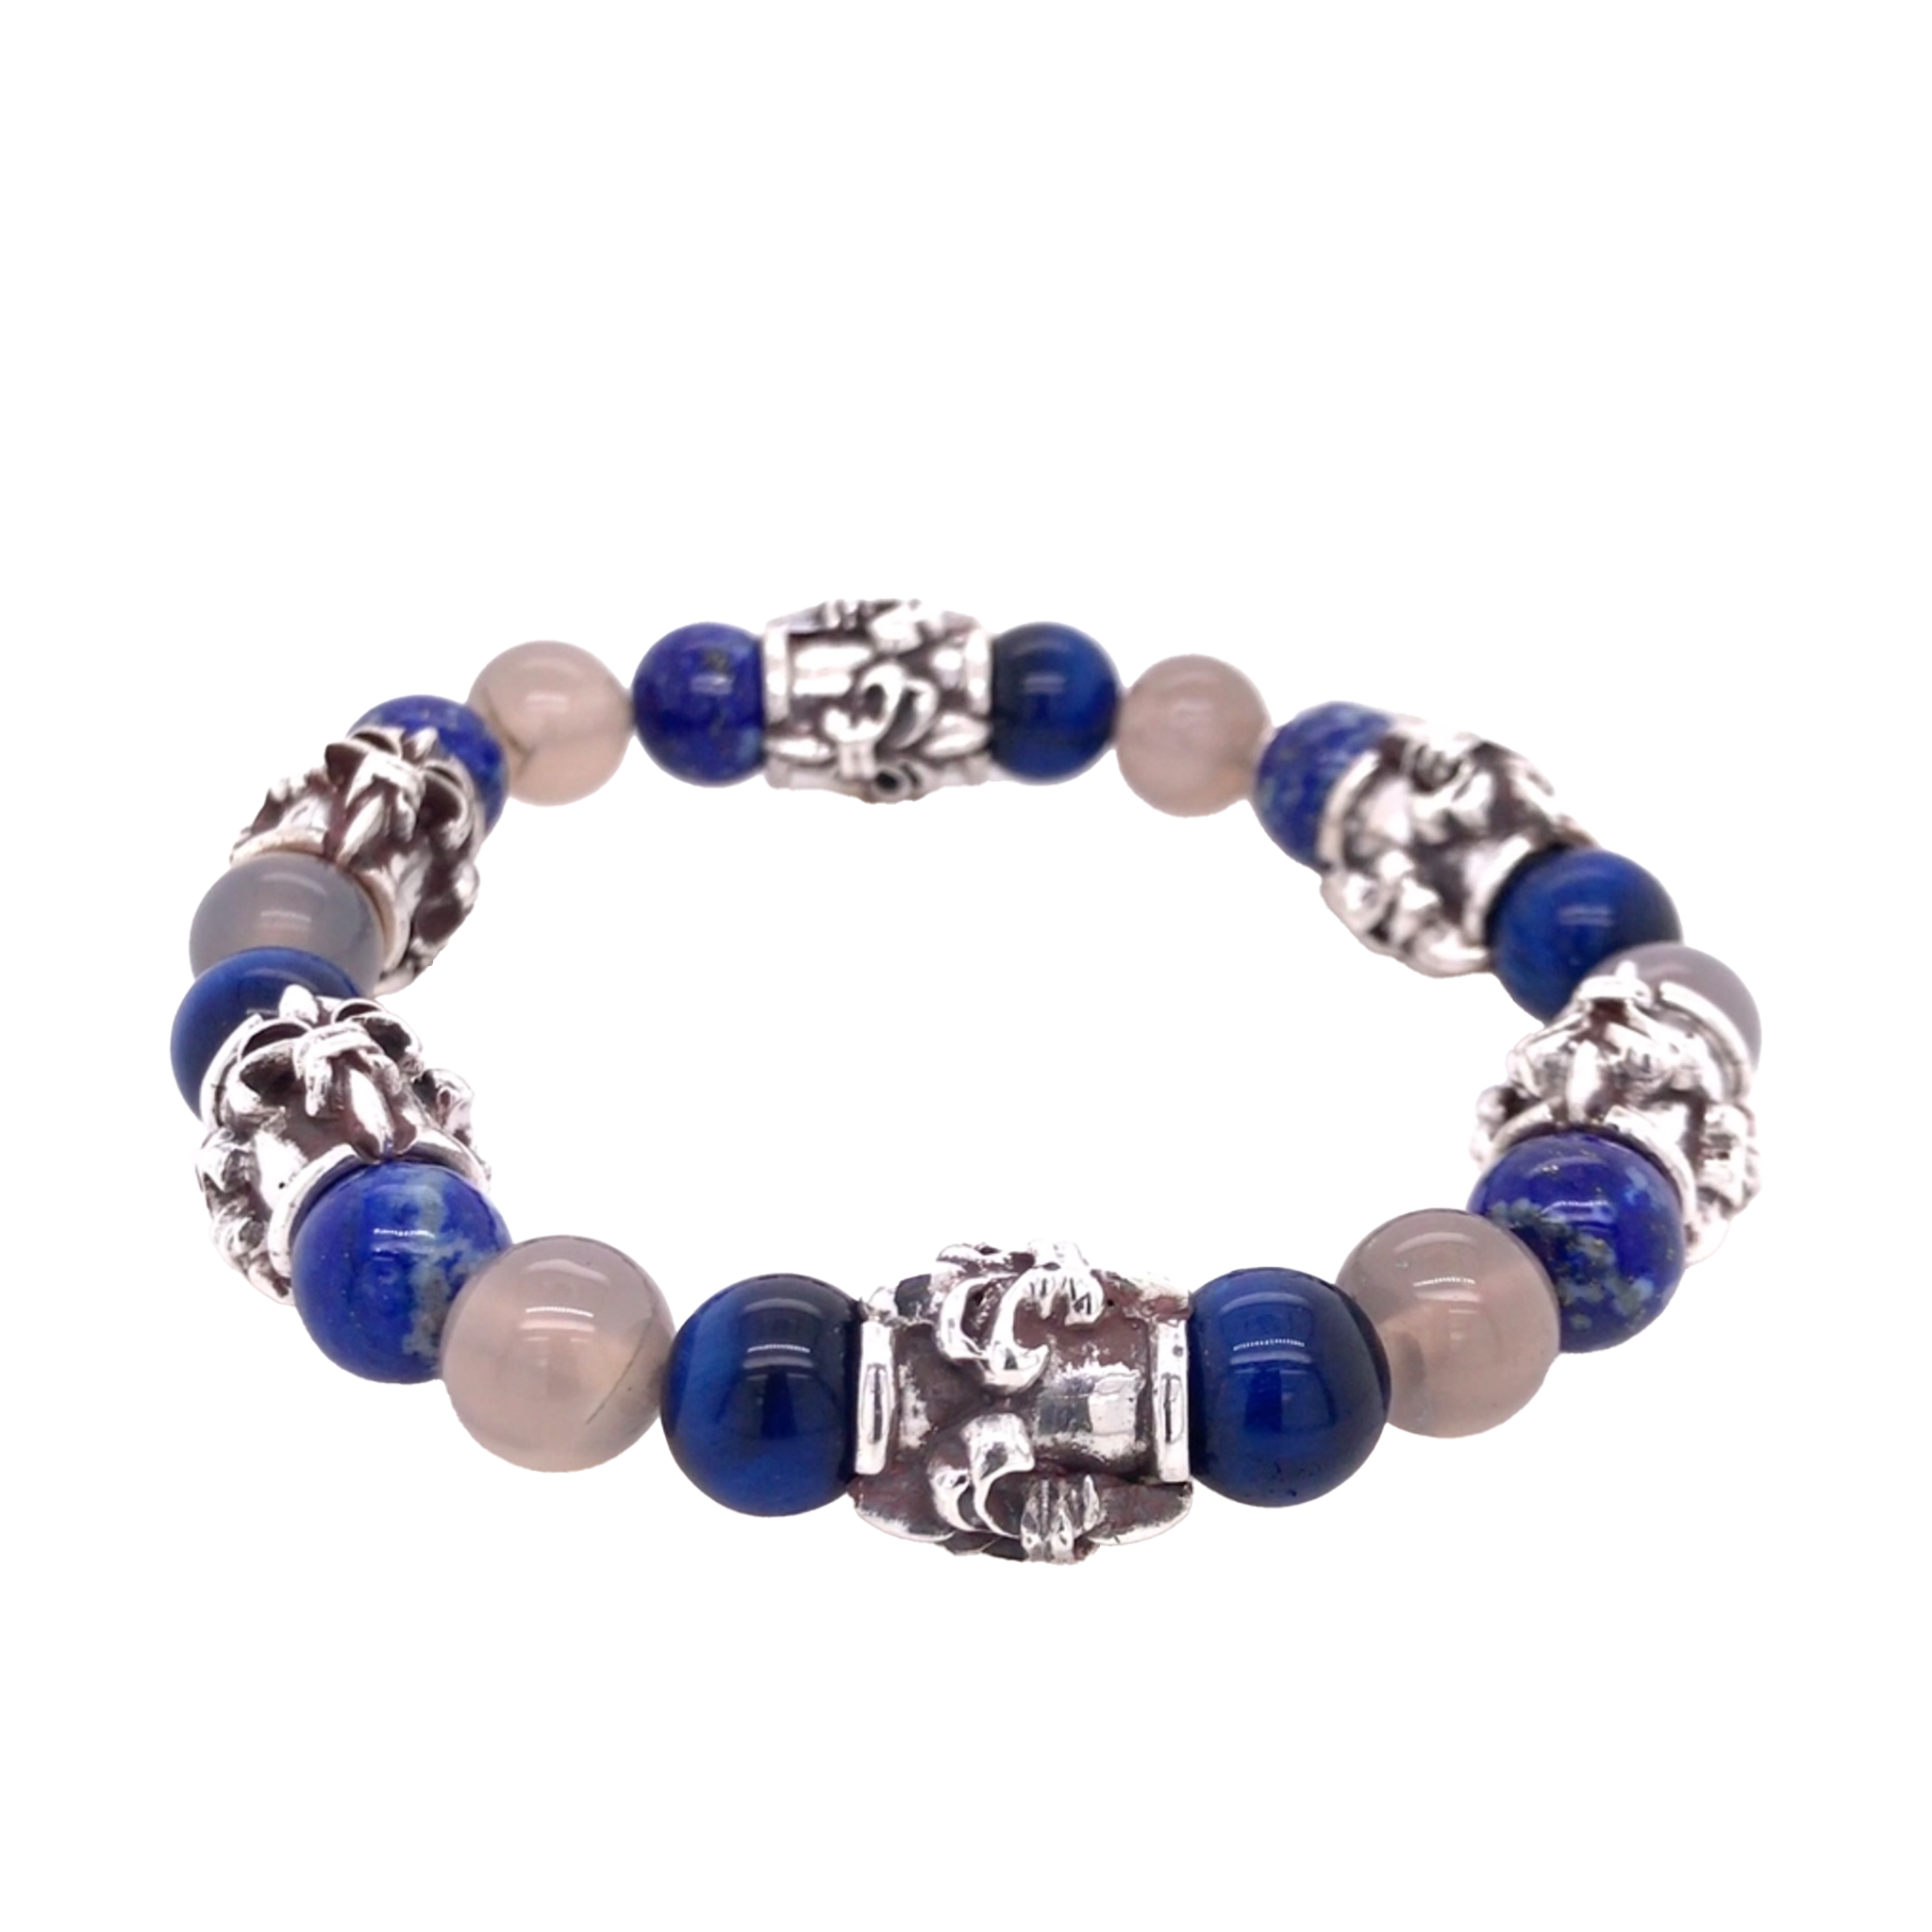 Elf Craft Armband aus Silberhülsen im Lilien-Design und mit runden blauen Lapis und weißen Edelsteinkugeln